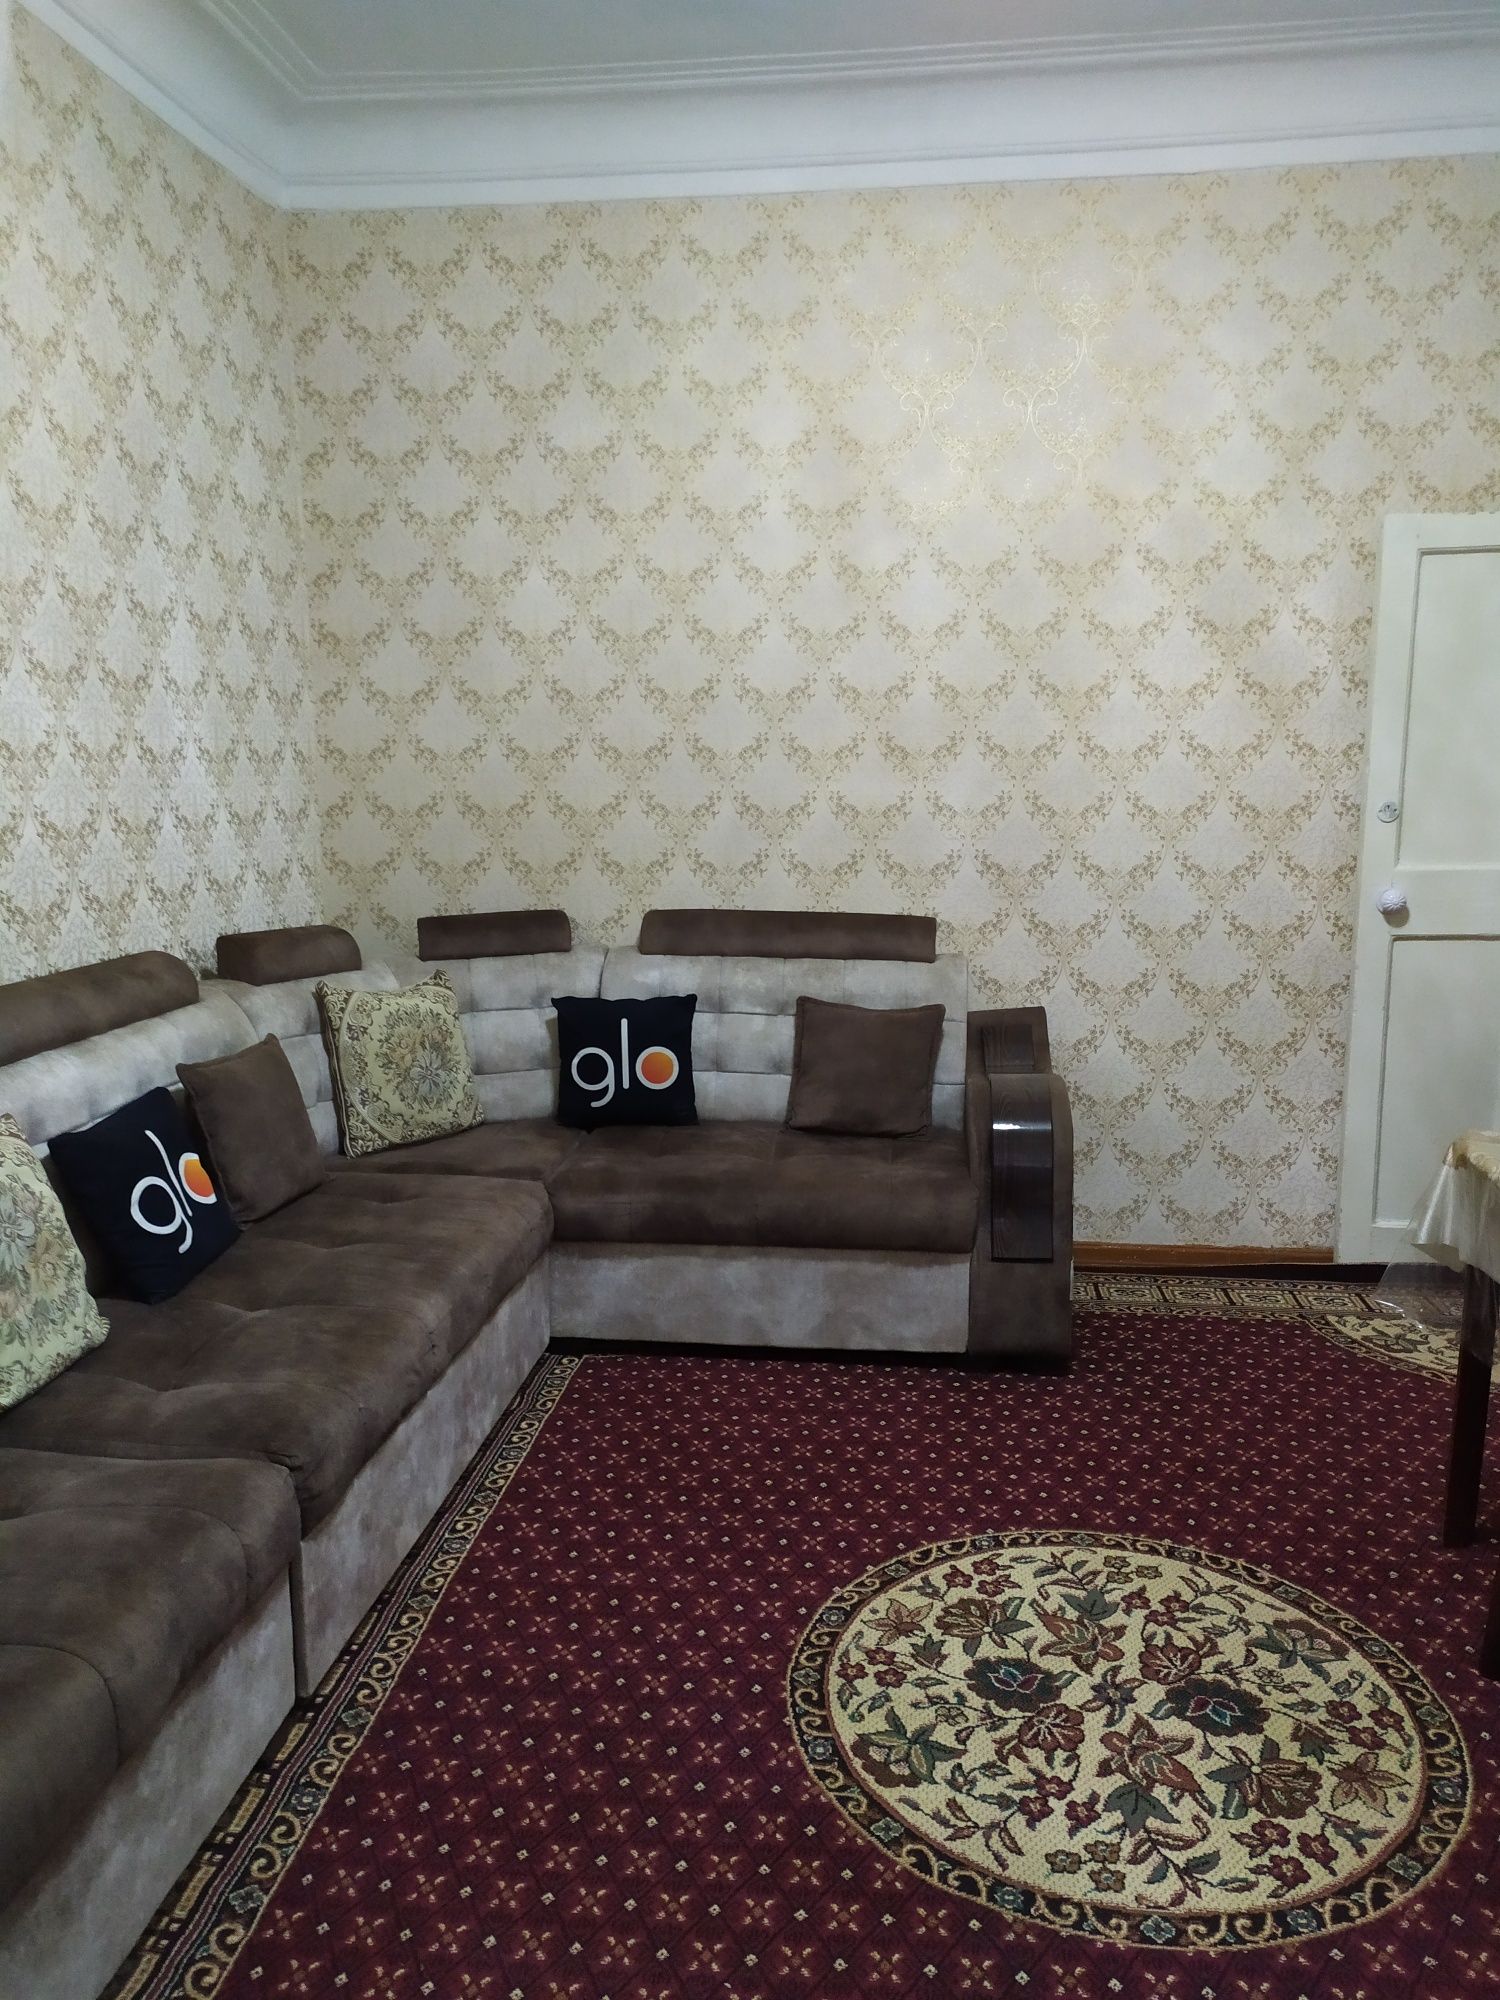 СРОЧНО Продается 2 х комнатная квартира в центре города Чирчика